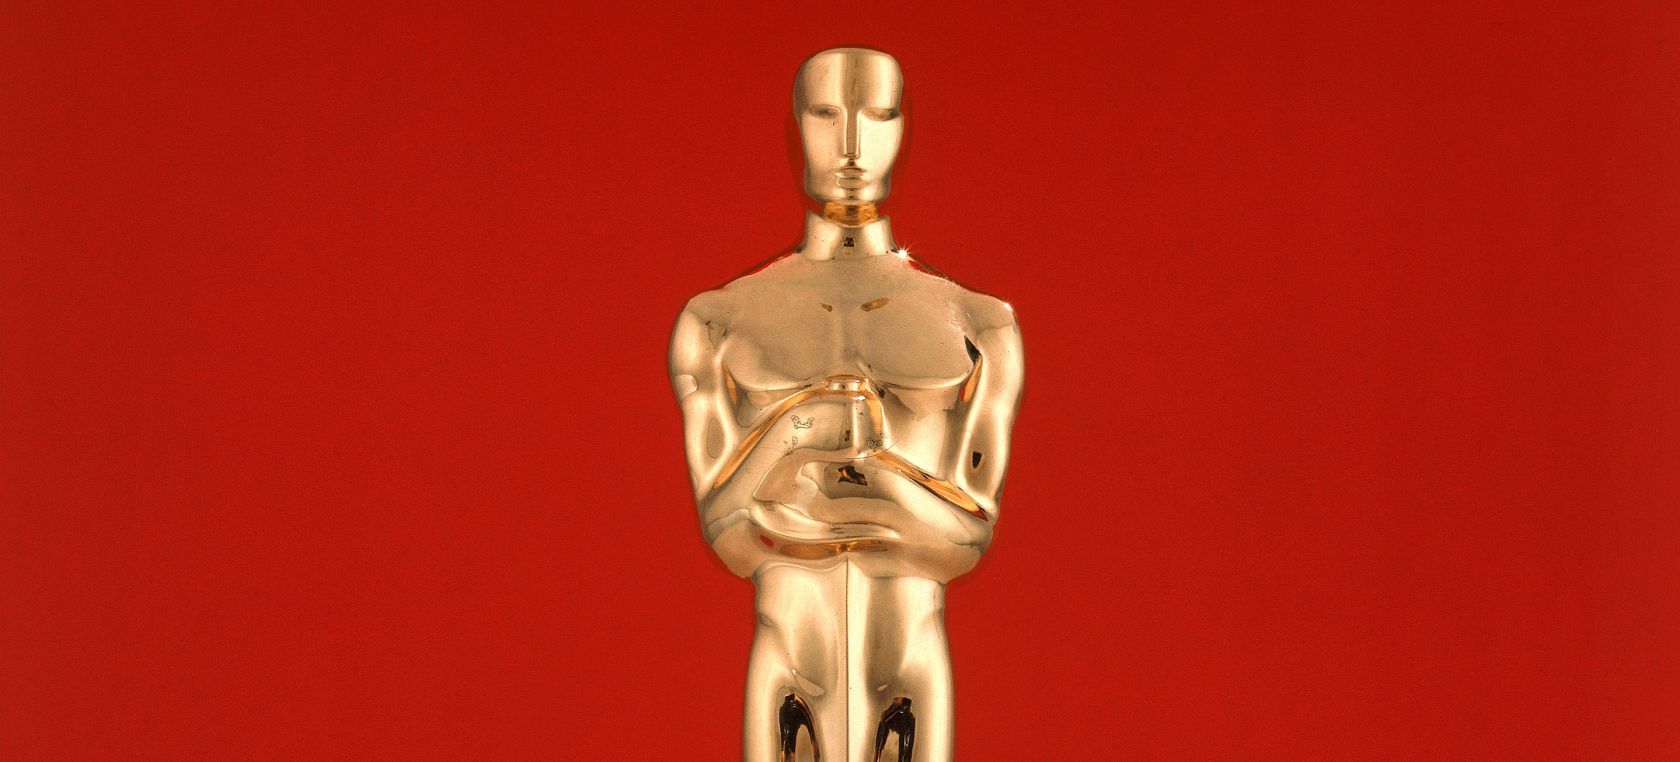 Premios Óscar 2021: a qué hora empieza la gala, dónde verla y cuáles son los favoritos